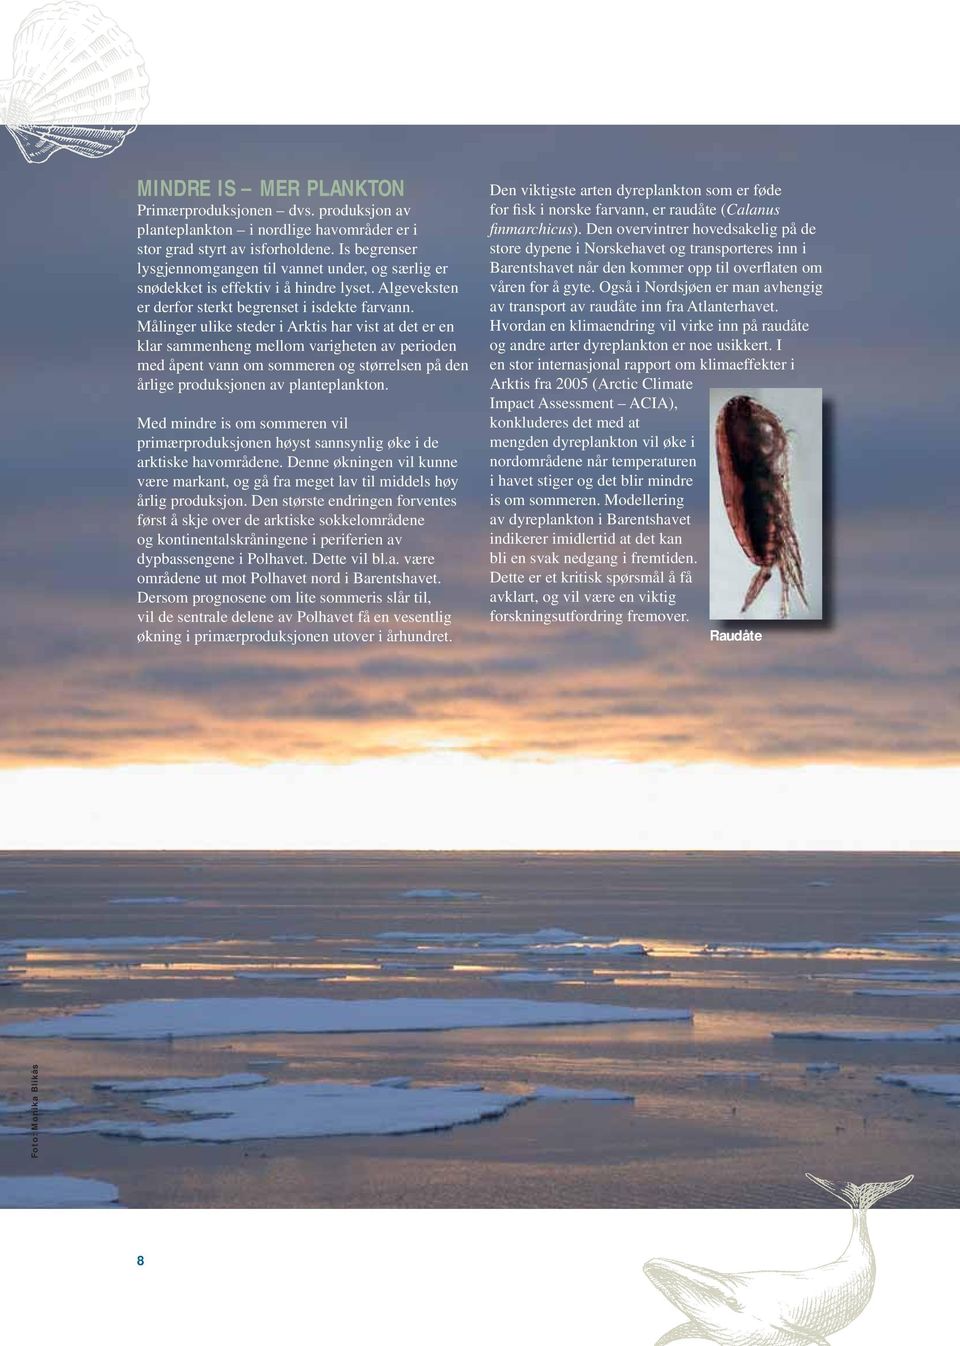 Målinger ulike steder i Arktis har vist at det er en klar sammenheng mellom varigheten av perioden med åpent vann om sommeren og størrelsen på den årlige produksjonen av planteplankton.